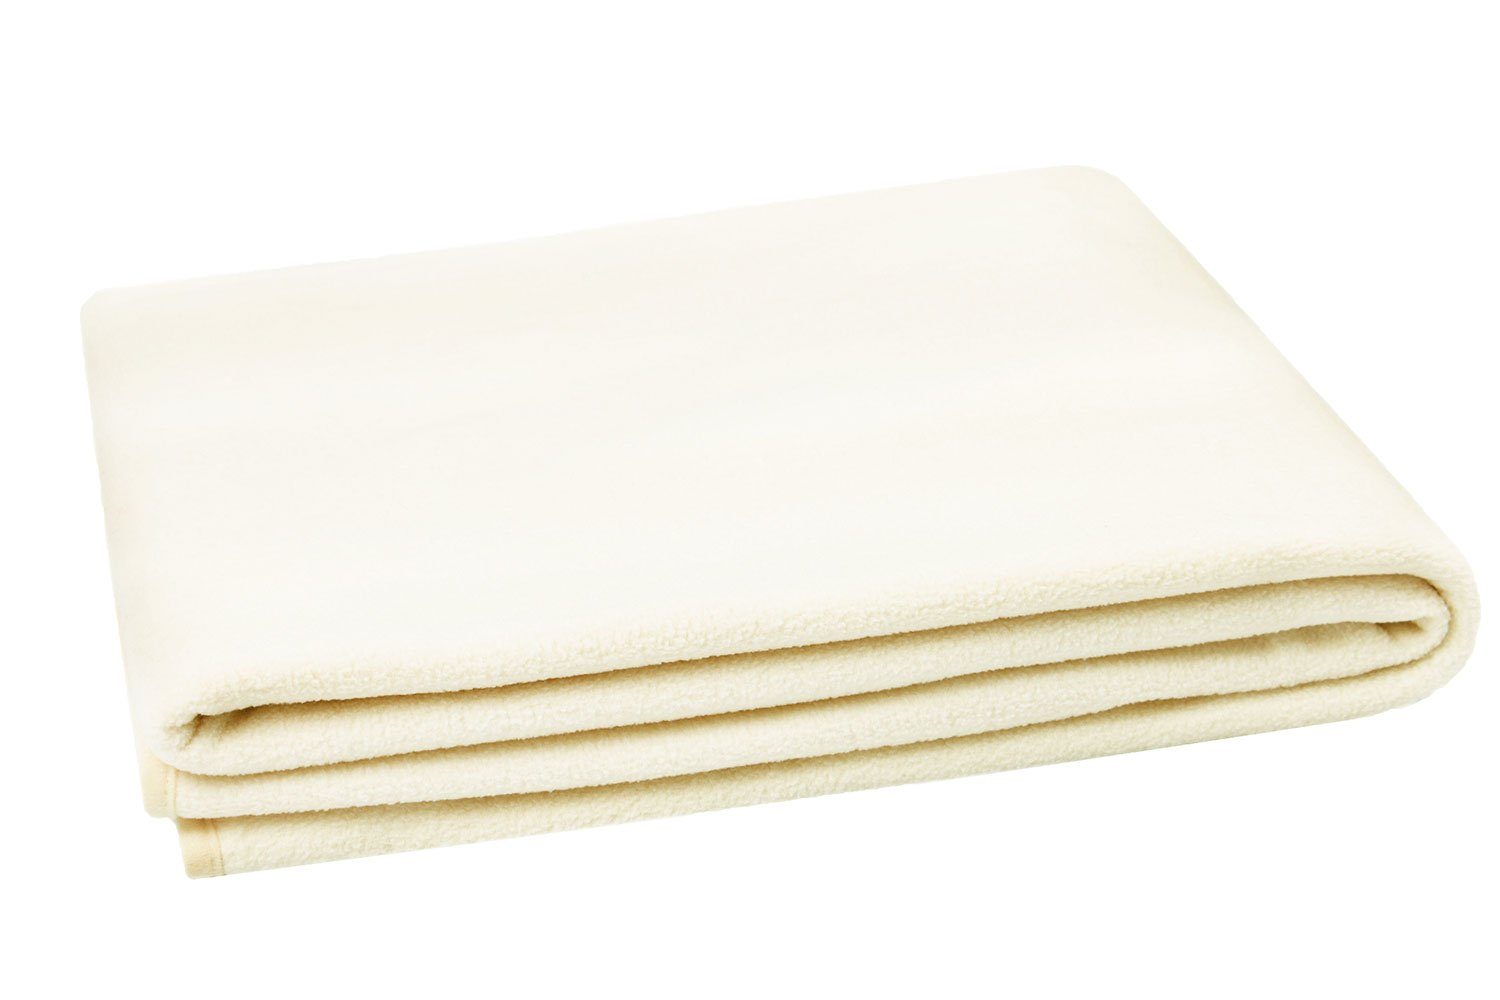 Wohndecke, ZOLLNER, hochwertiges Einfassband, 130 x 170 cm, 100% Polyester, in vielen modernen Farben verfügbar vanille